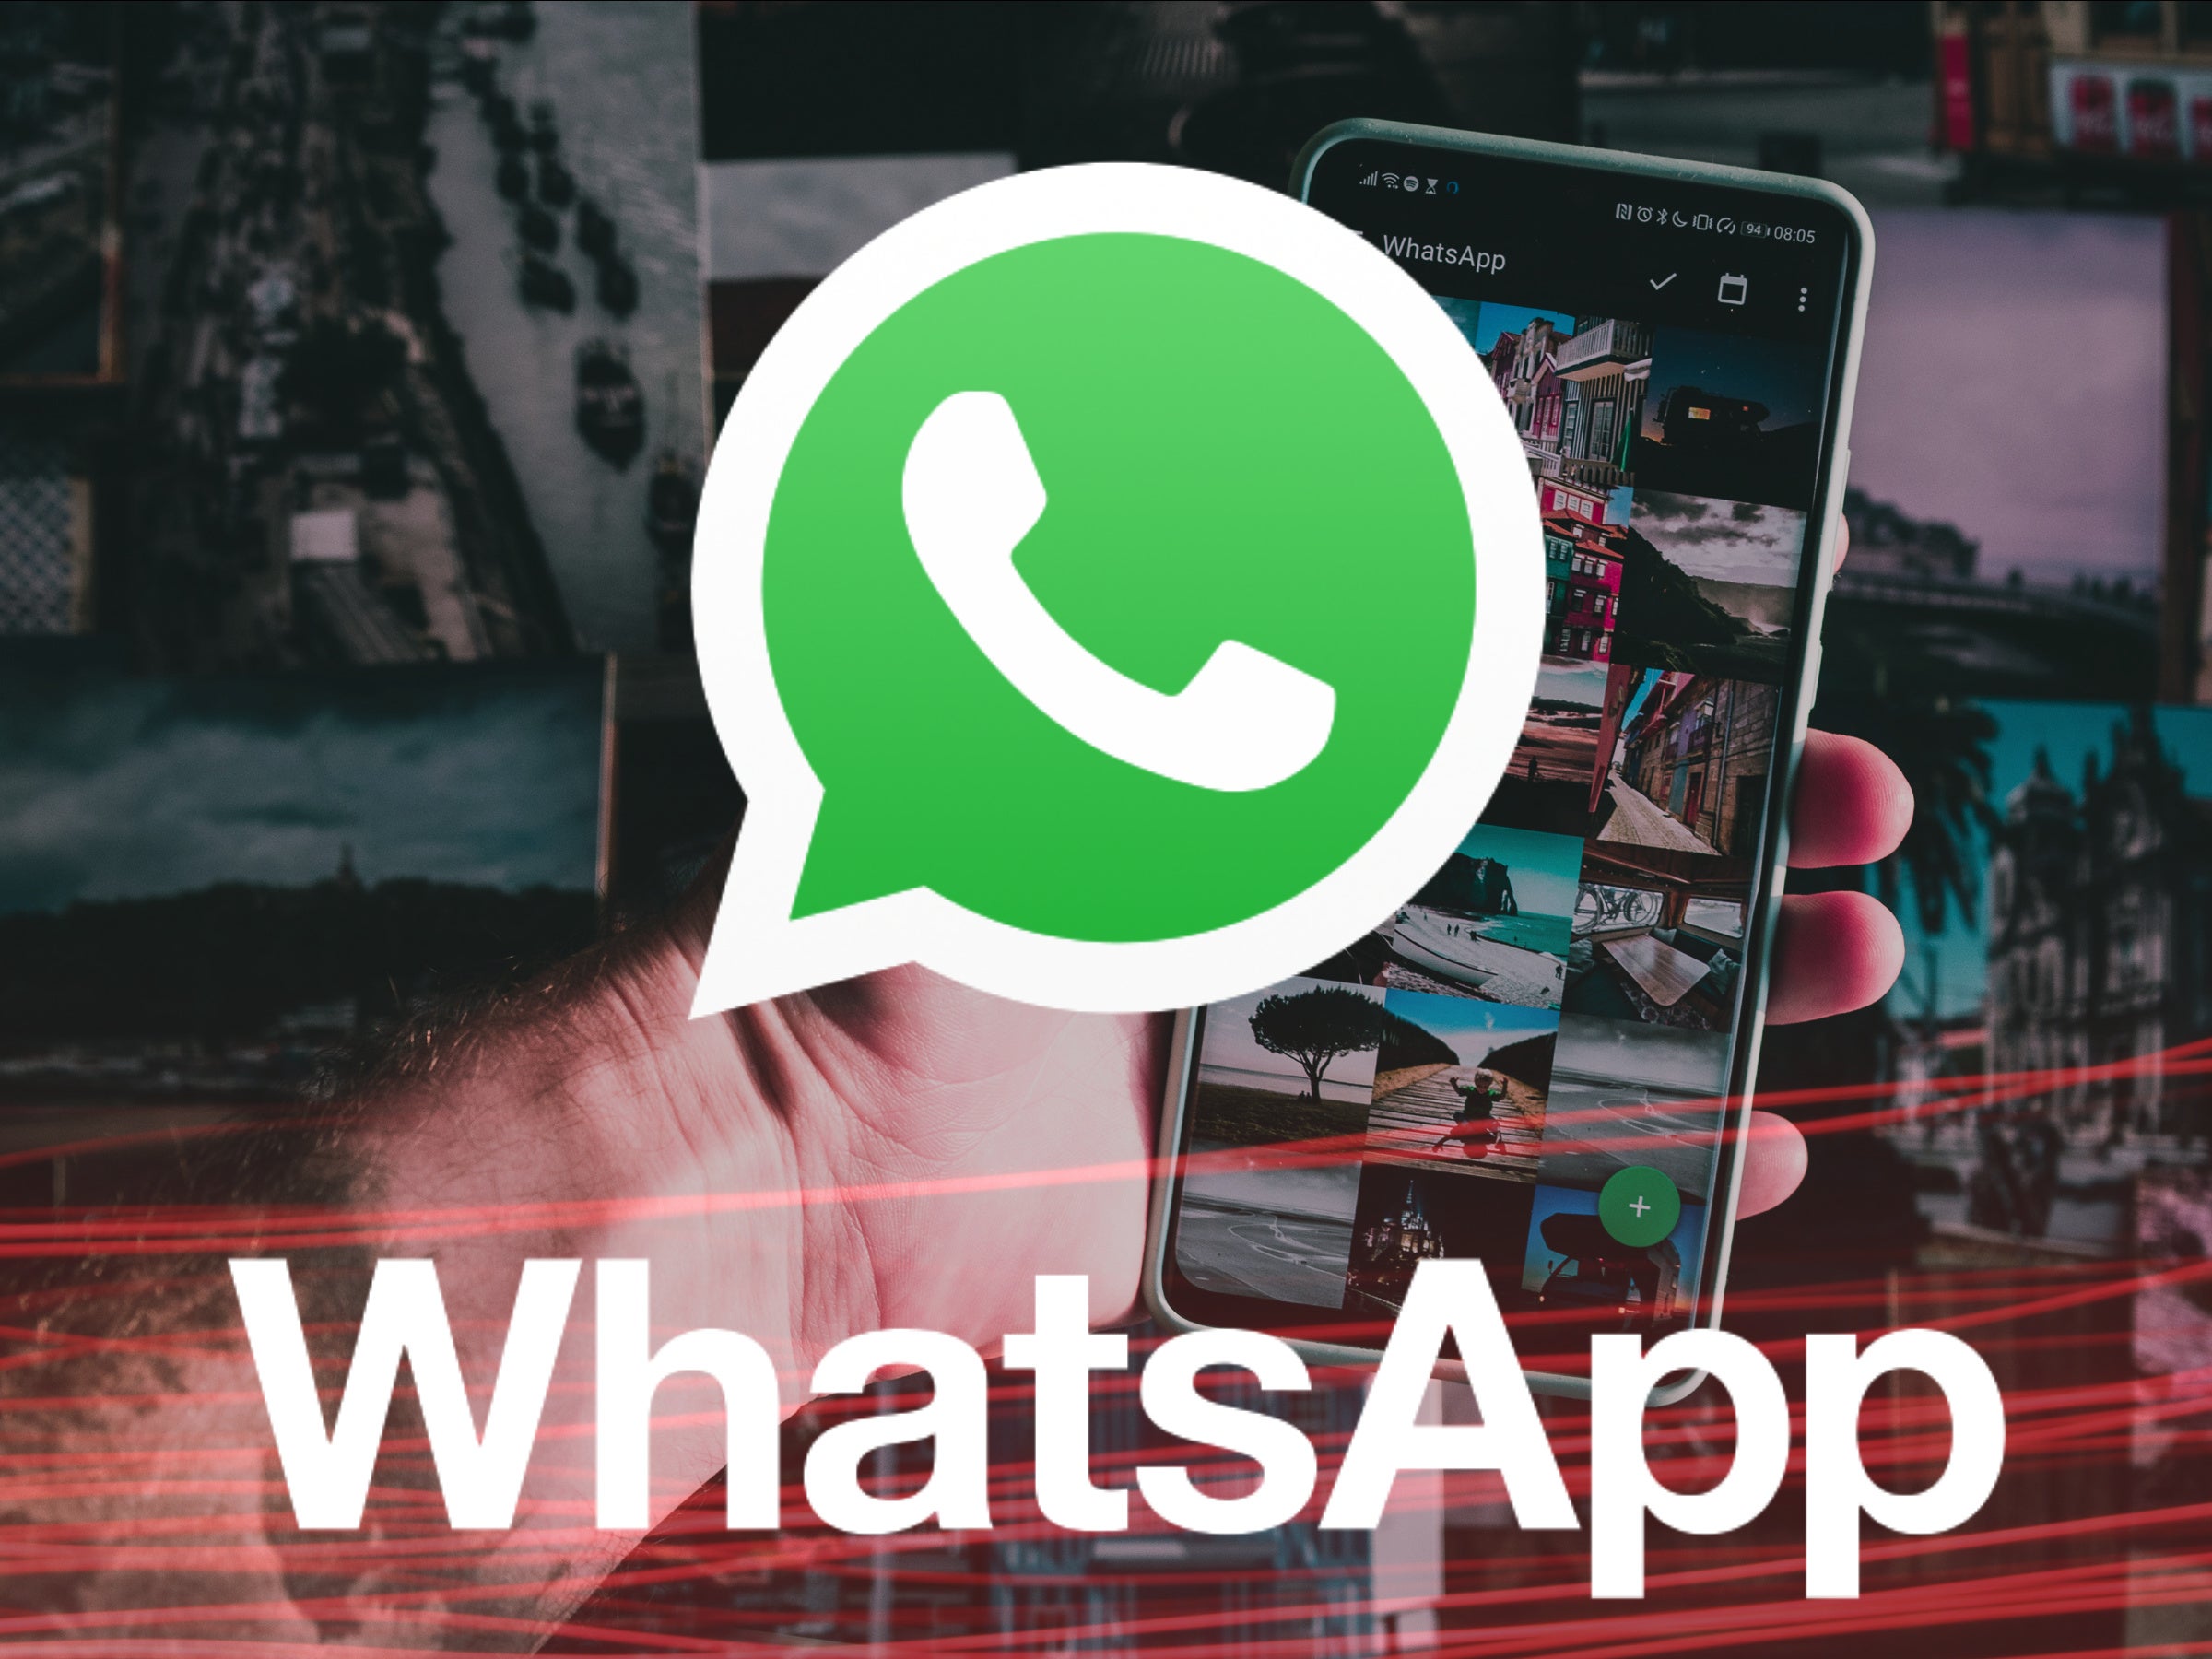 #WhatsApp bekommt 7 neue Funktionen: Gruppen-Modus, Emoji-Feature und mehr